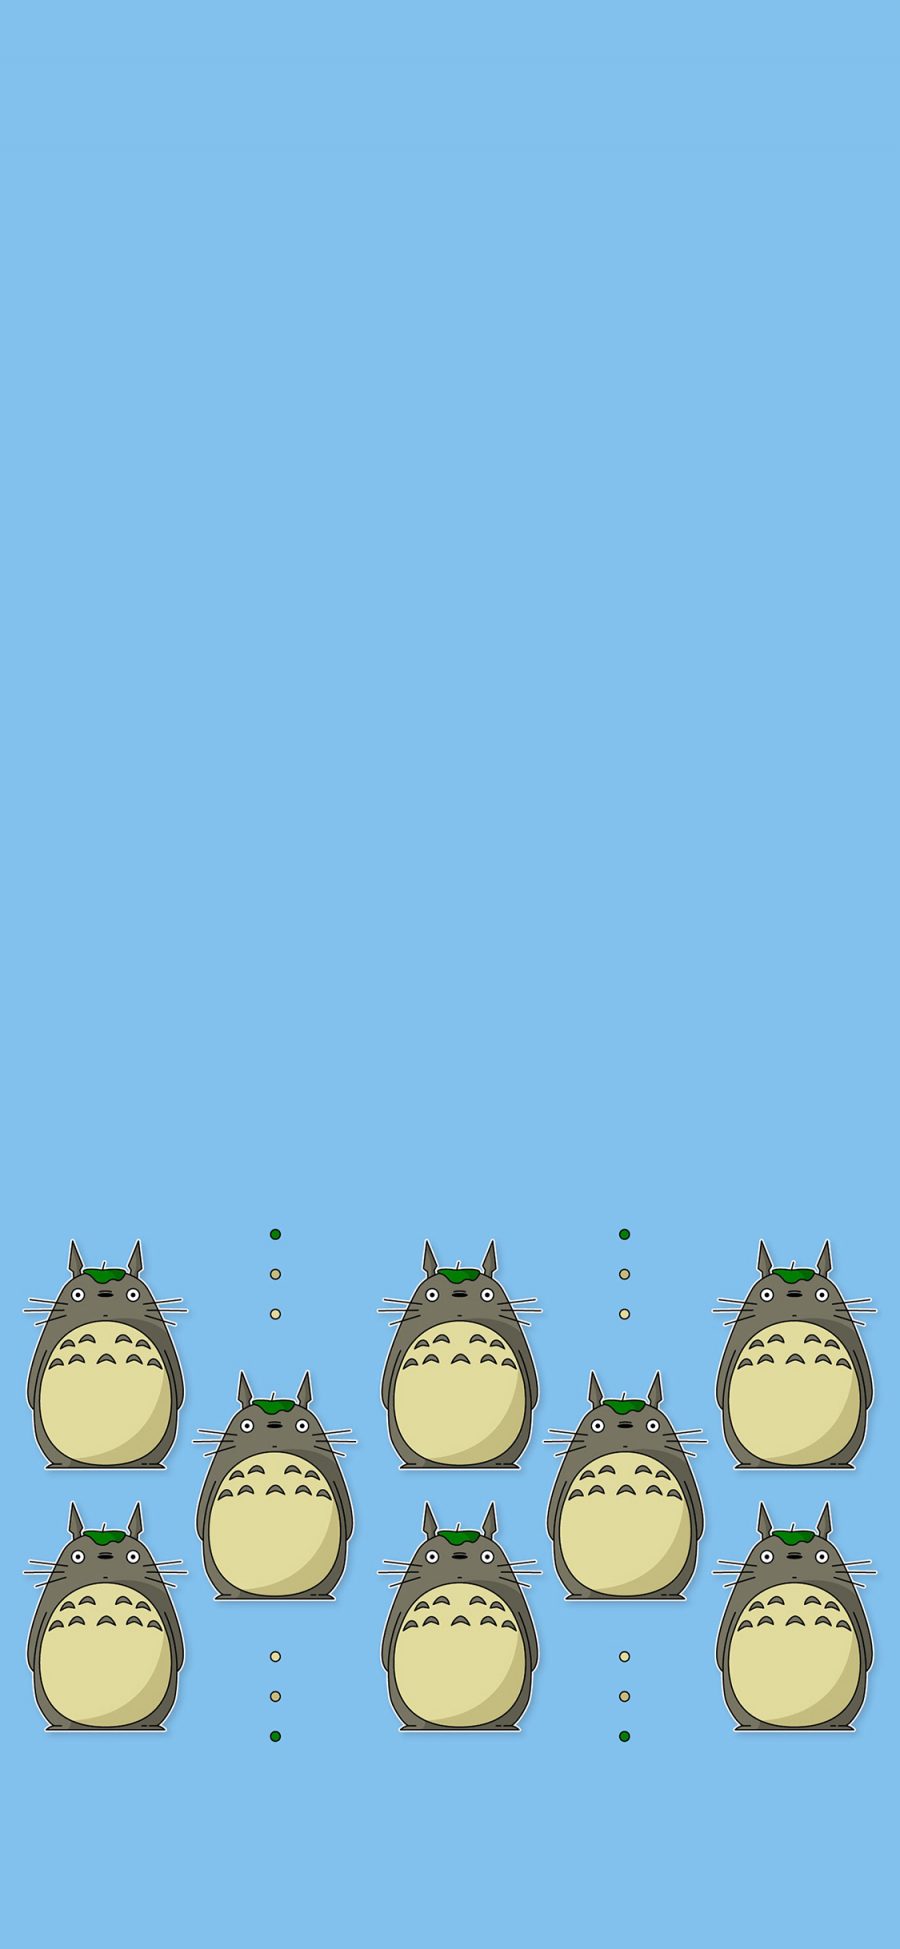 [2436×1125]龙猫 排列 蓝色 宫崎骏 日本 动画 苹果手机动漫壁纸图片